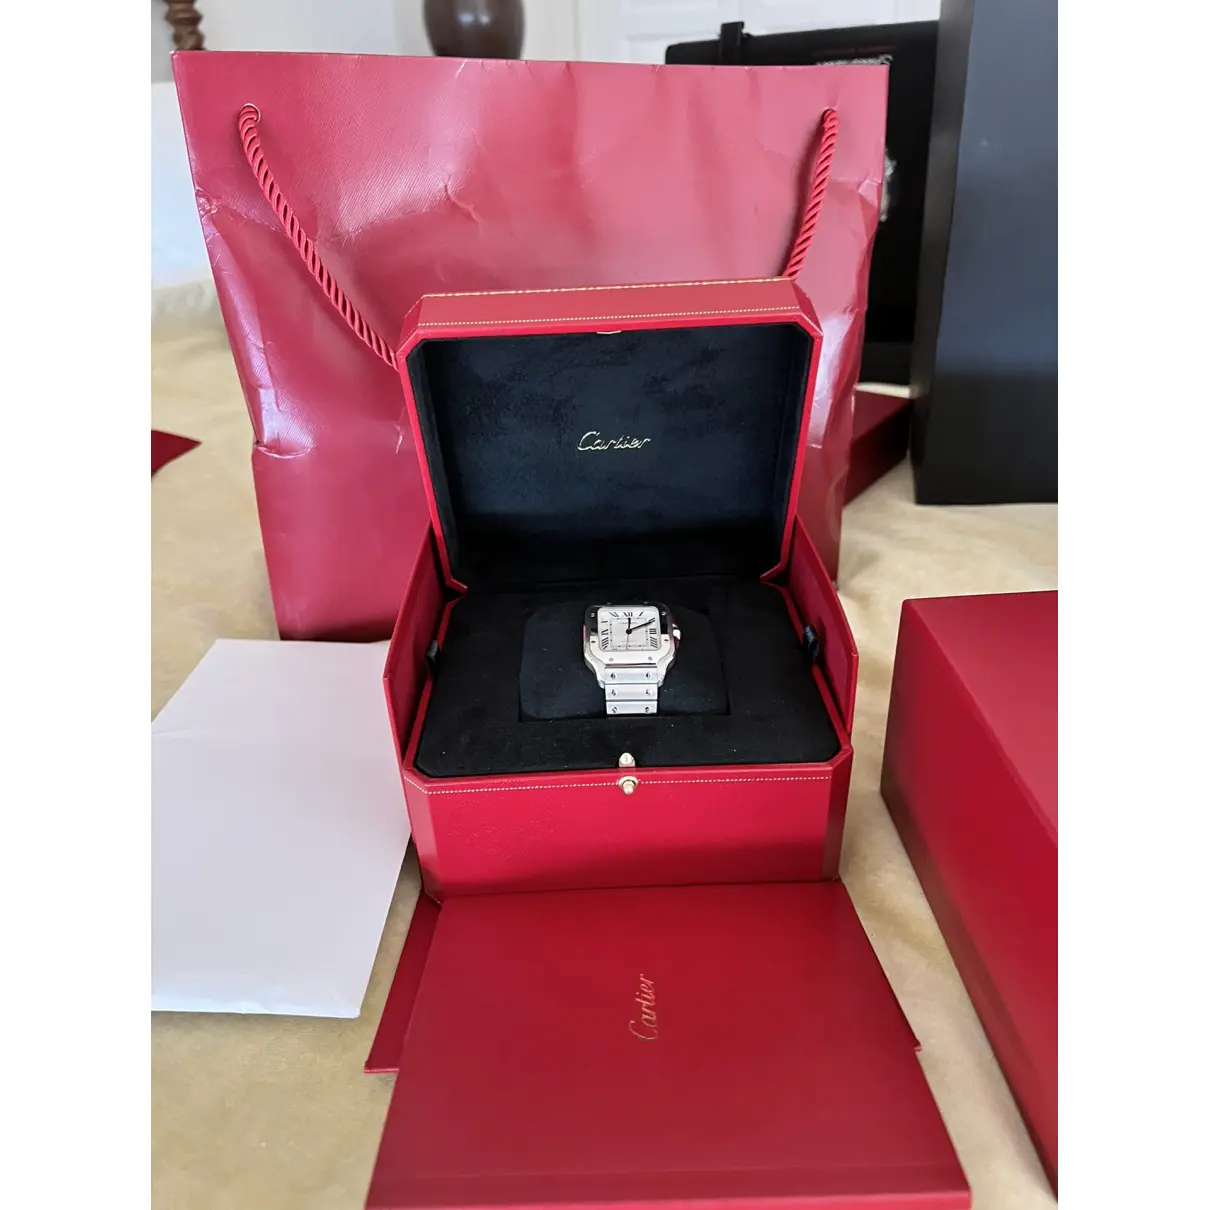 Luxury Cartier Watches Men